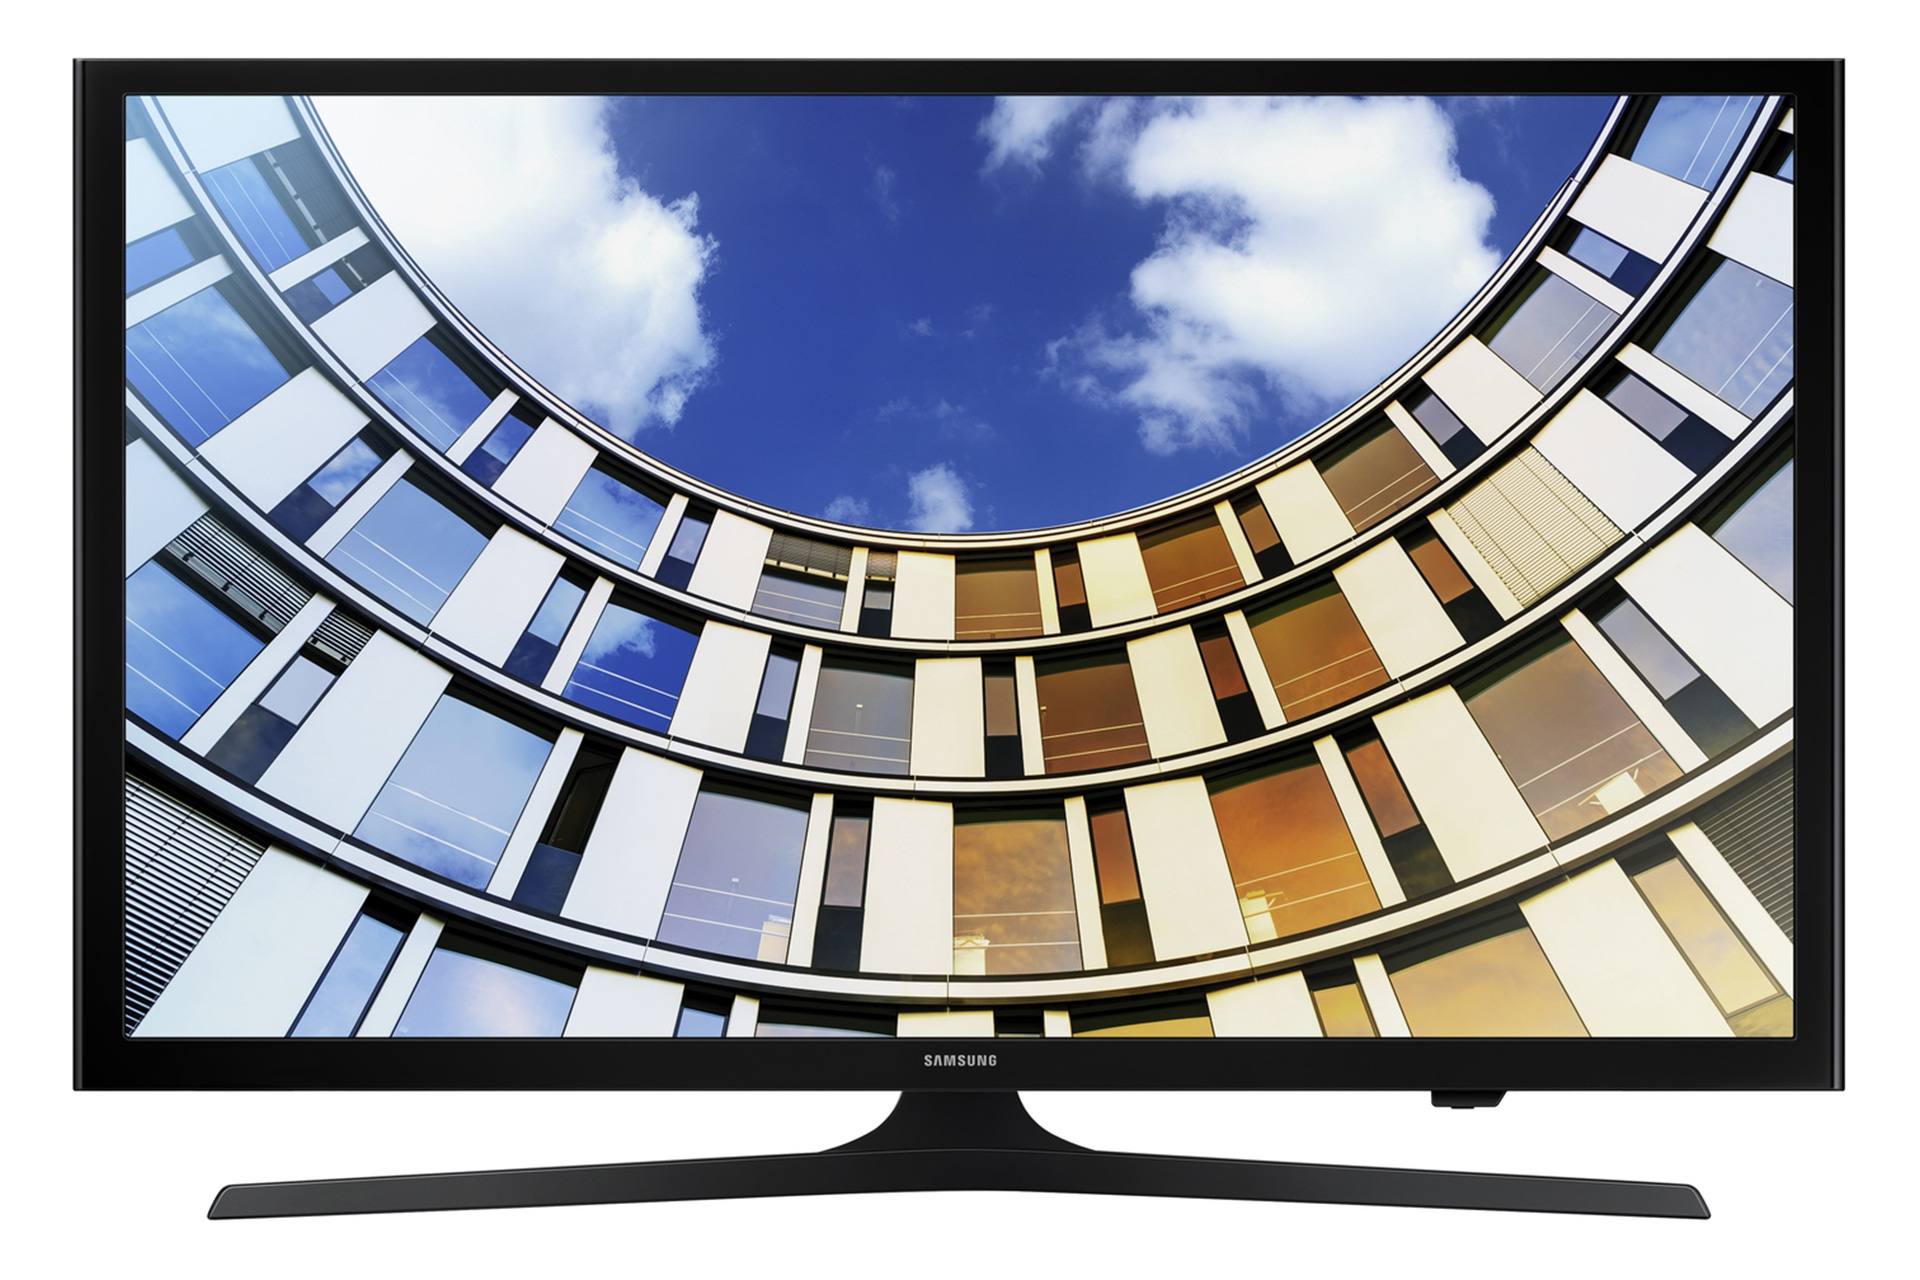 نمای جلو تلویزیون سامسونگ M5300 مدل 49 اینچ با صفحه روشن